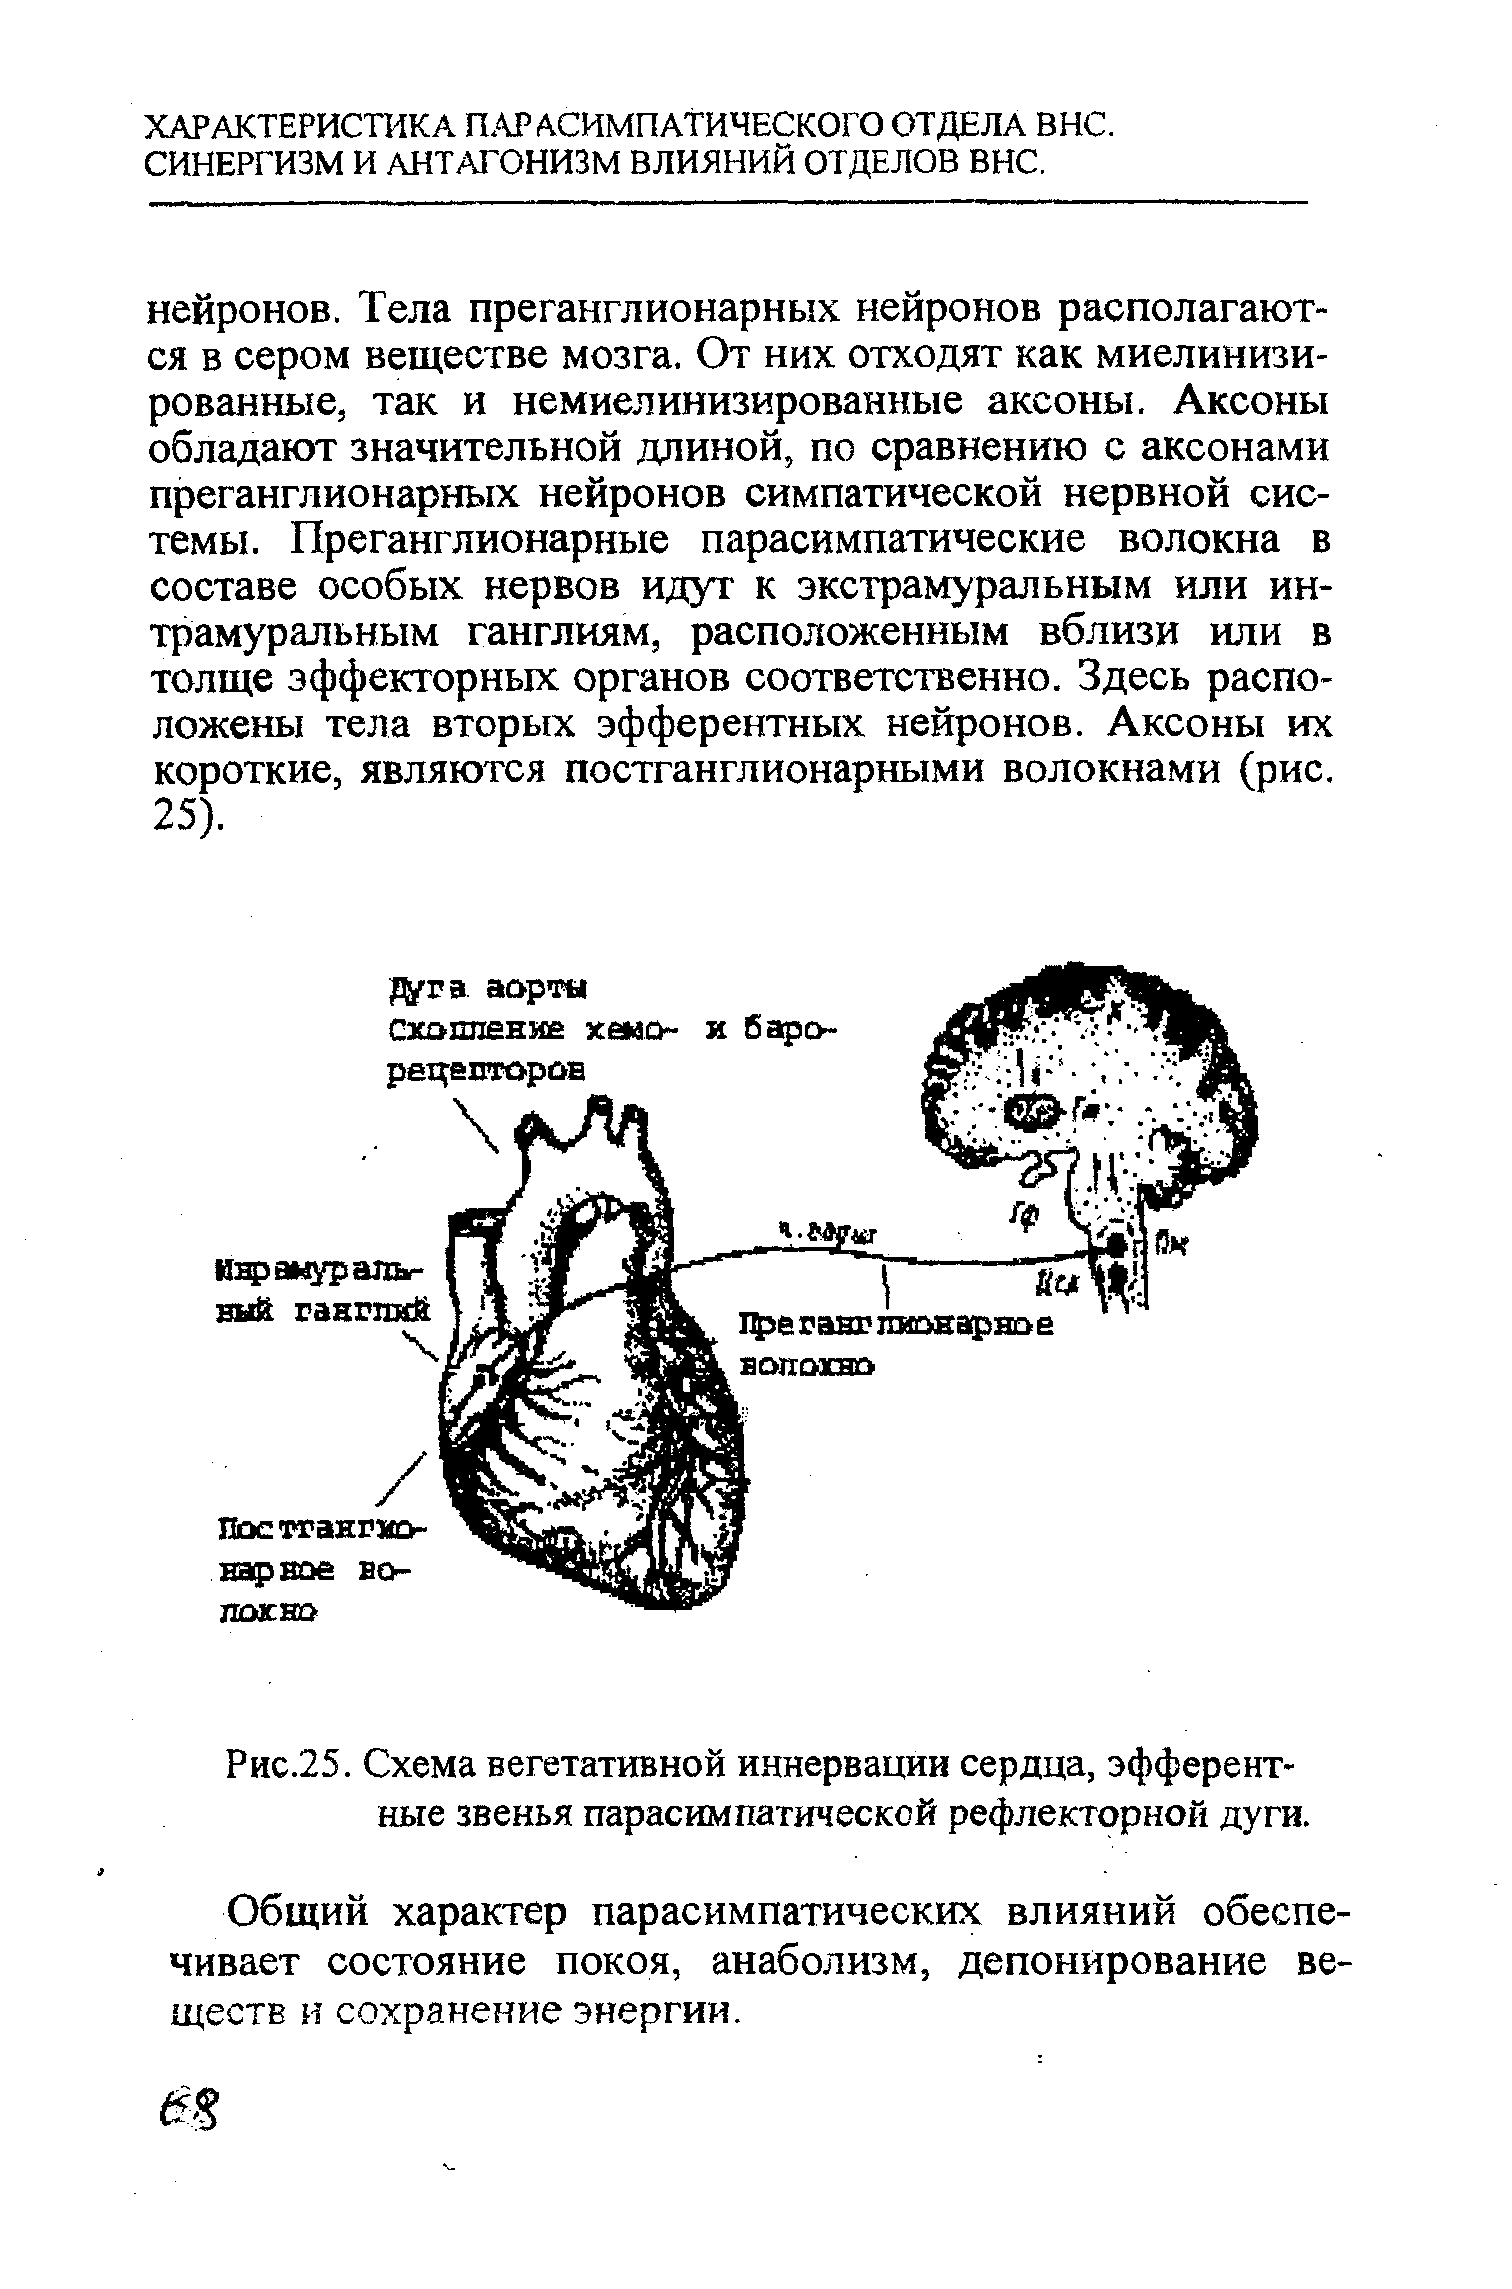 Рис.25. Схема вегетативной иннервации сердца, эфферентные звенья парасимпатической рефлекторной дуги.